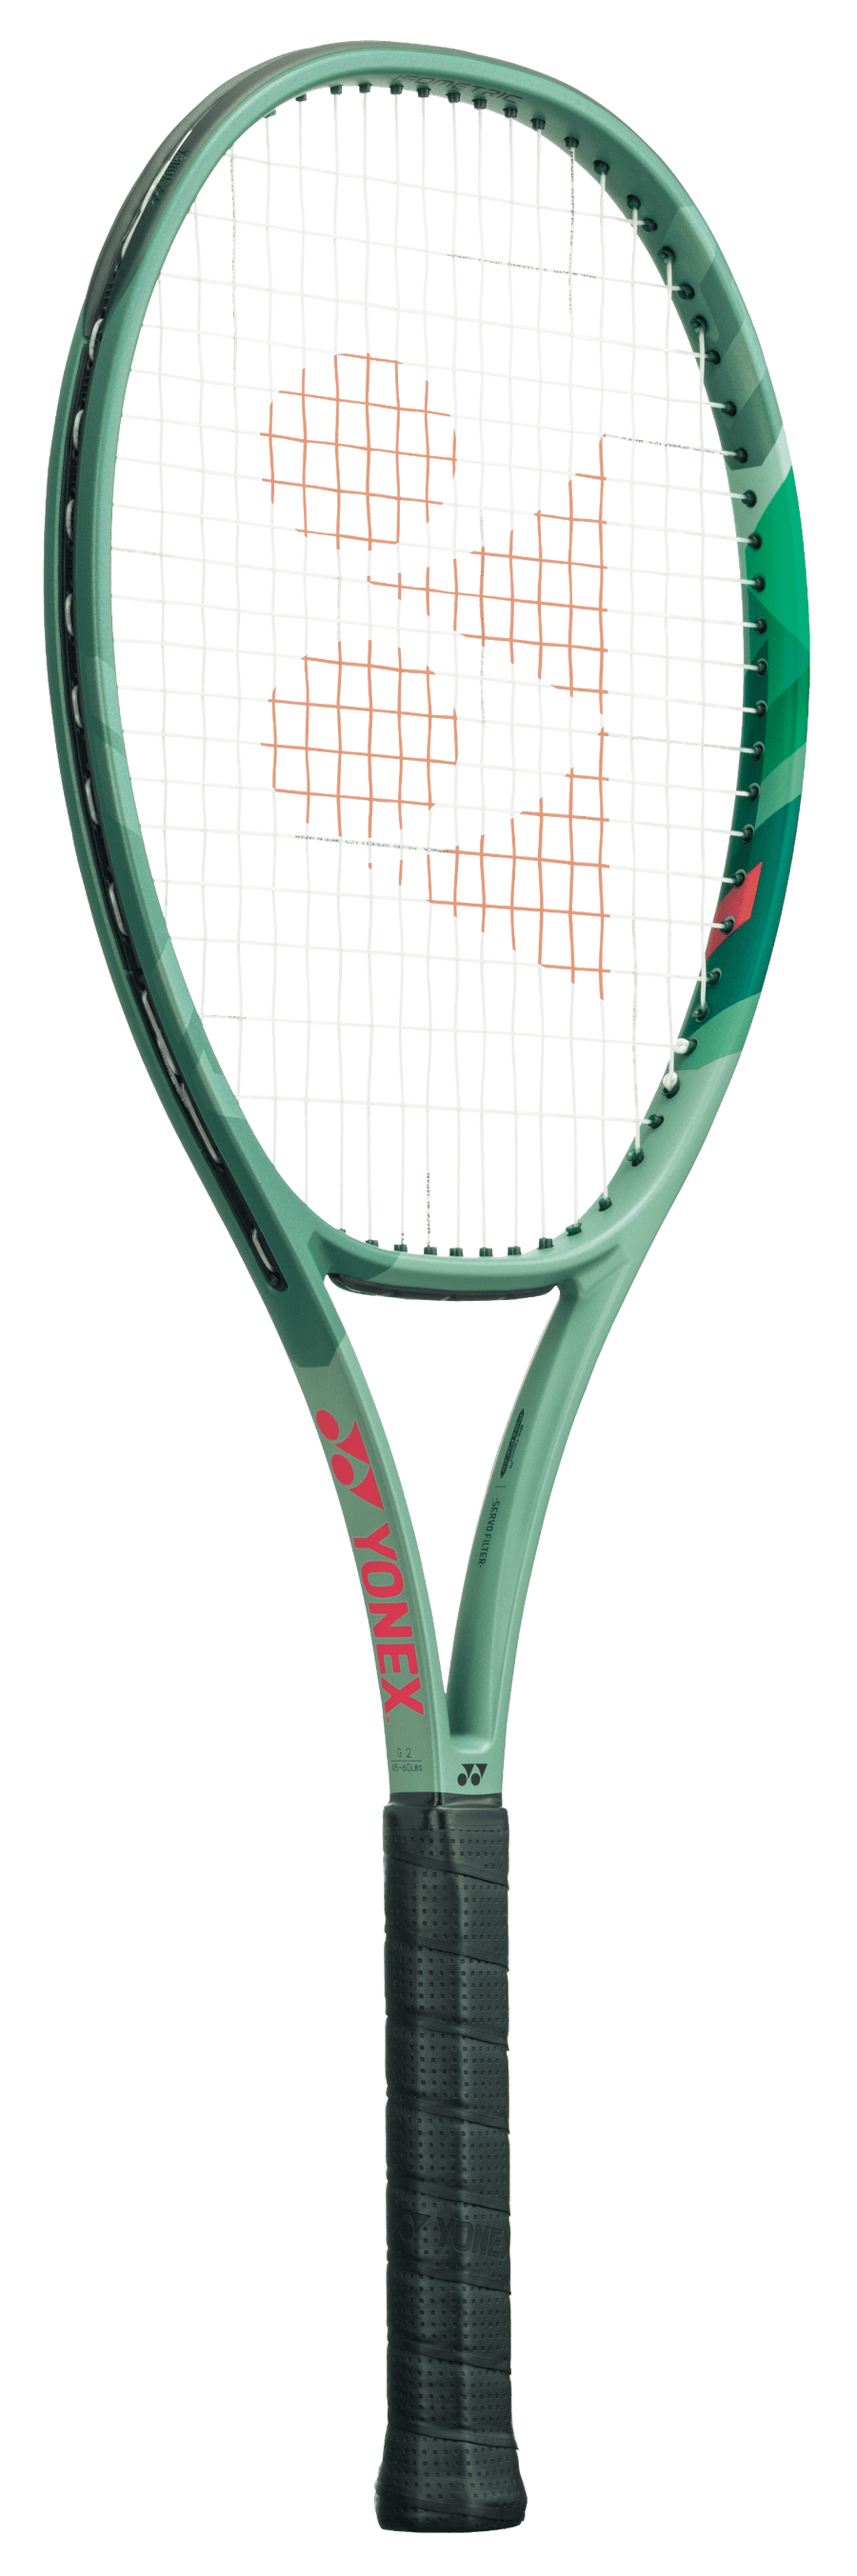 Grip Tape, Tennis, Badminton & Squash